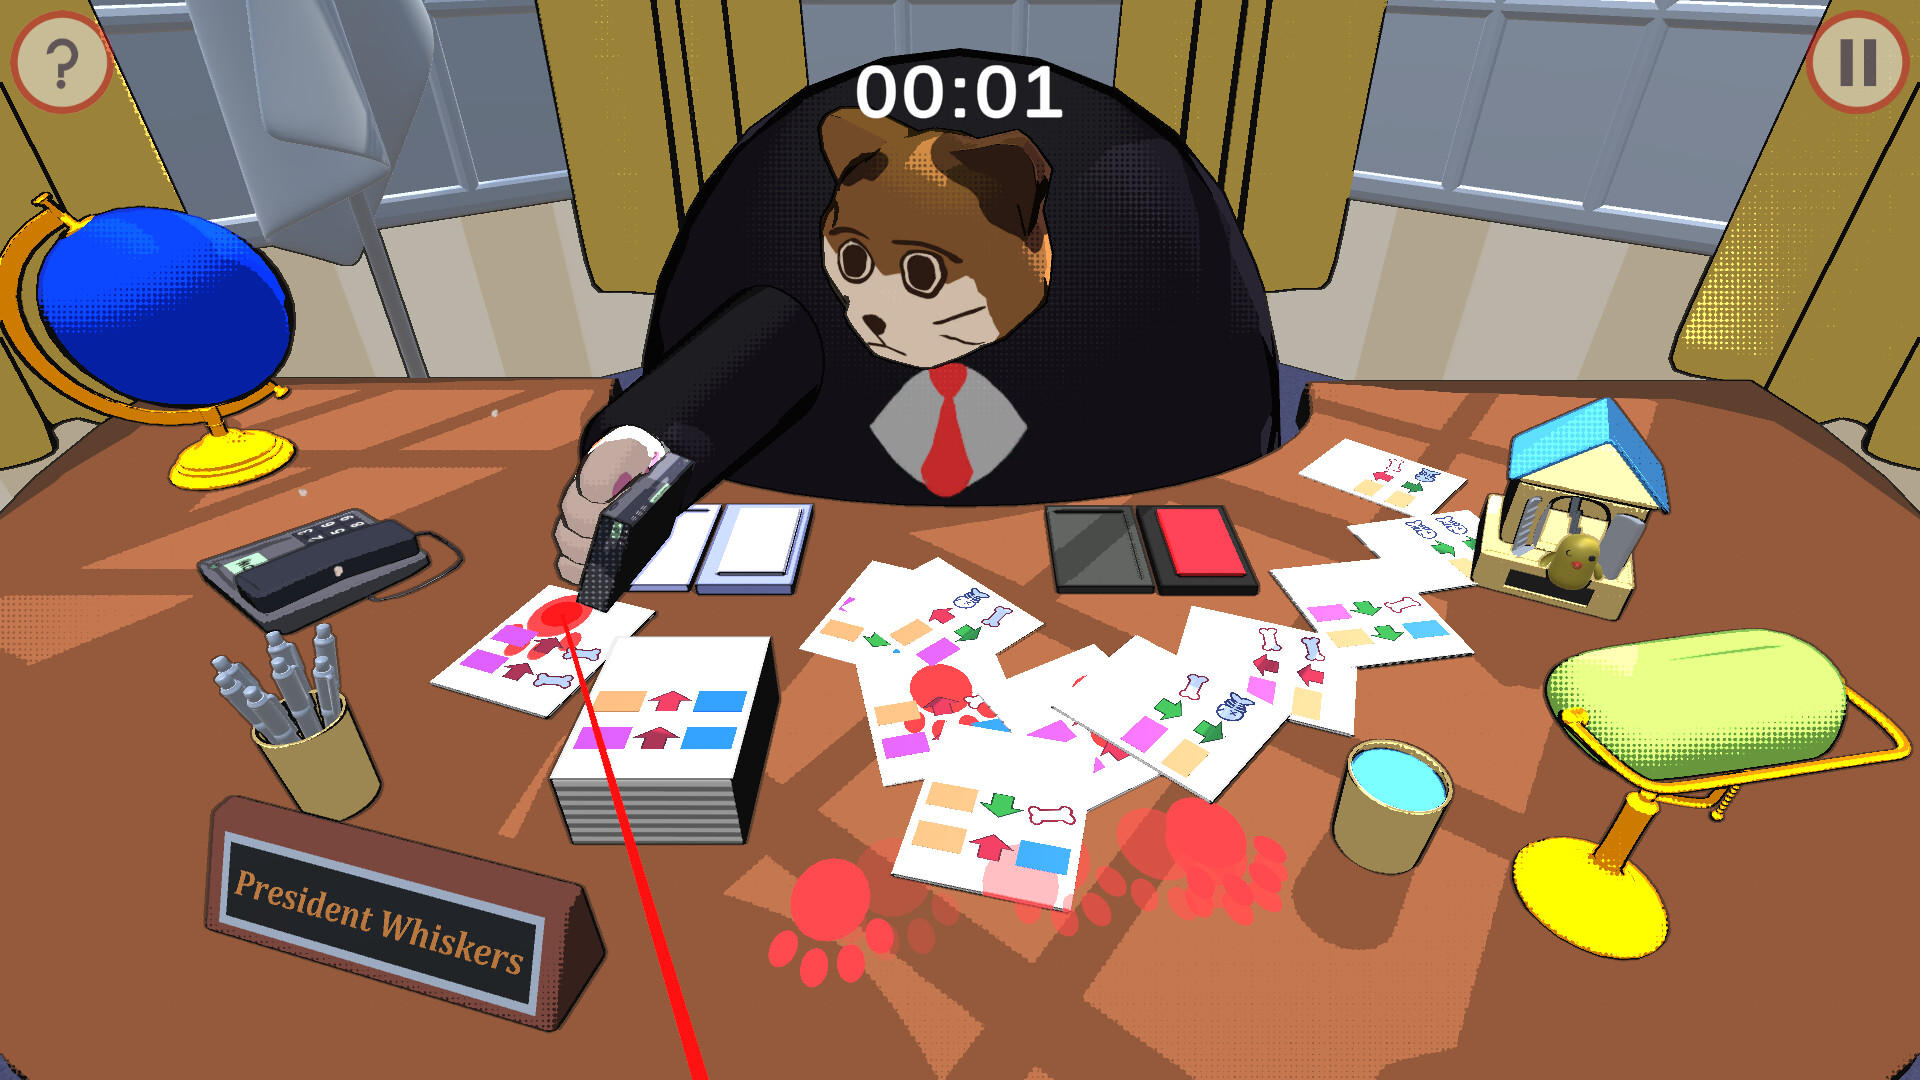 Whisker President screenshot game